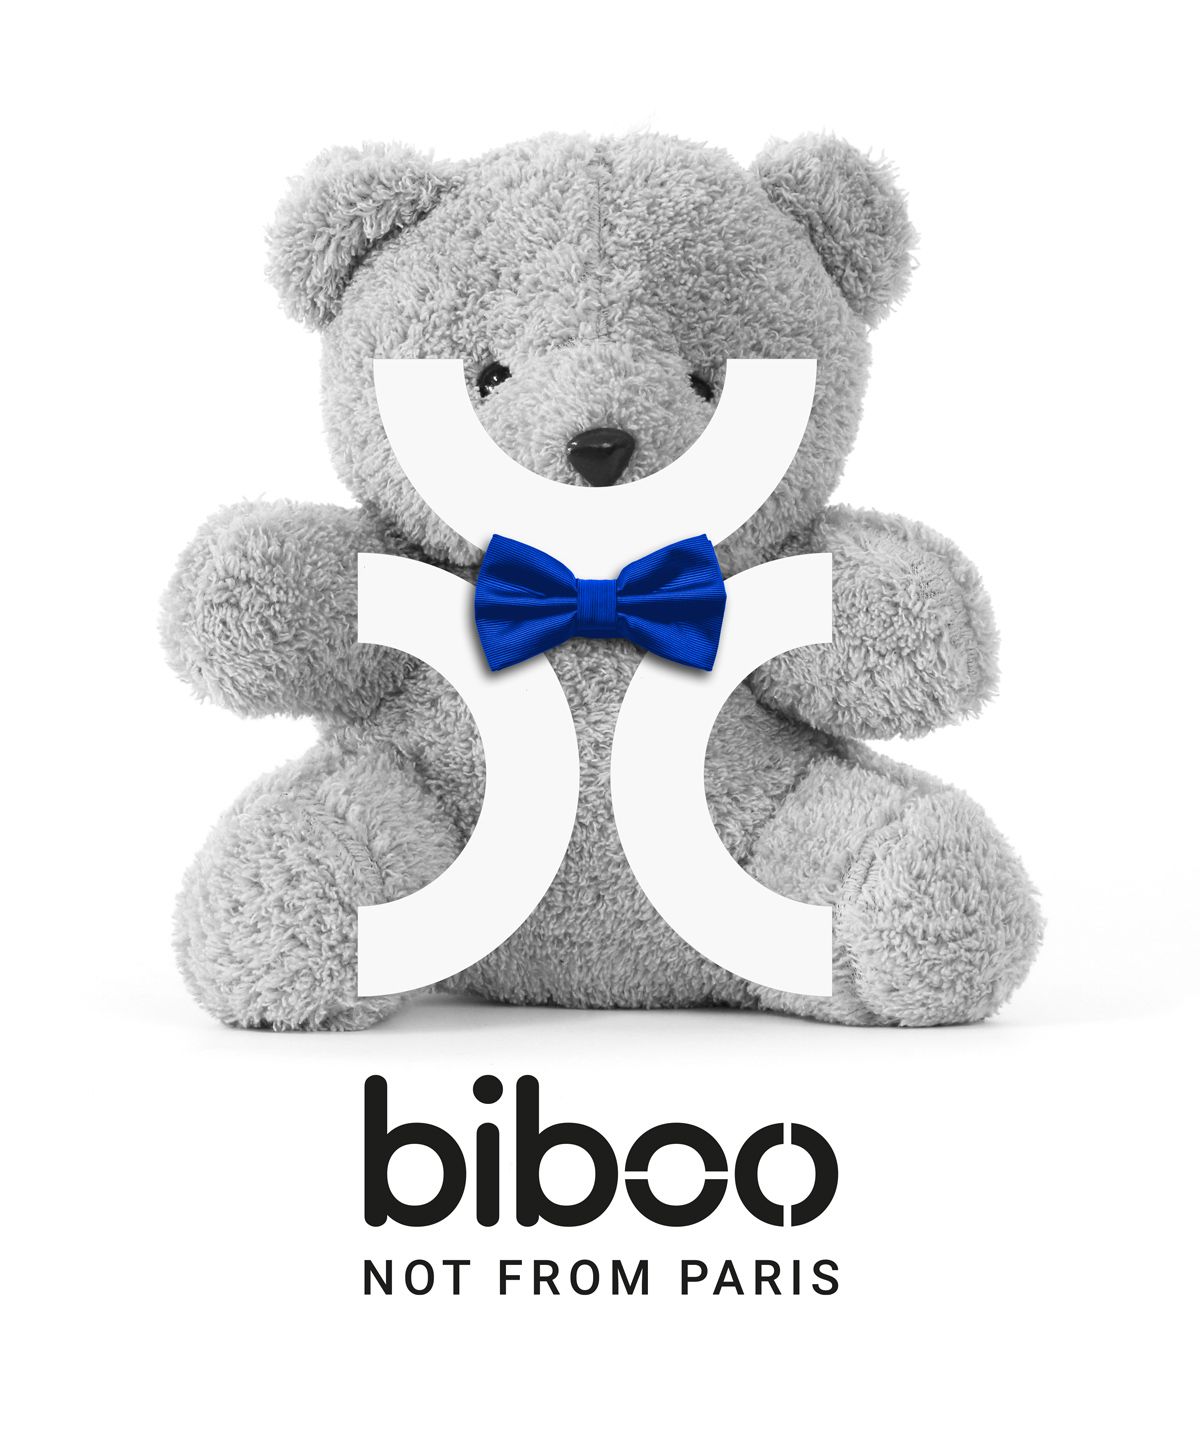 BIBOO, not from Paris